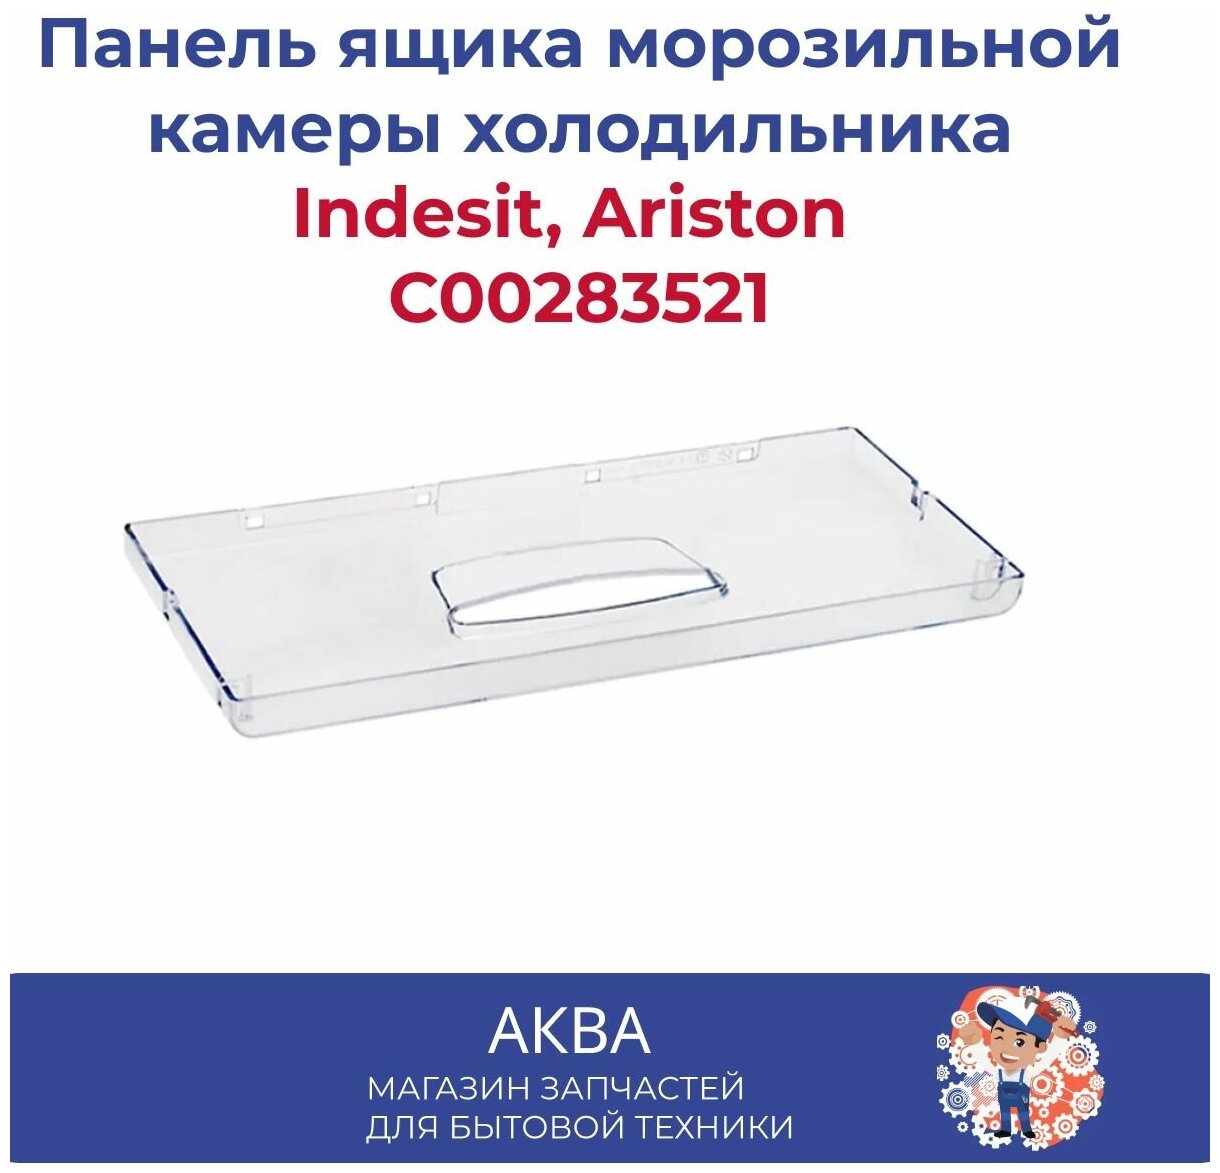 Панель ящика морозильной камеры C00283521 холодильника Indesit, Ariston